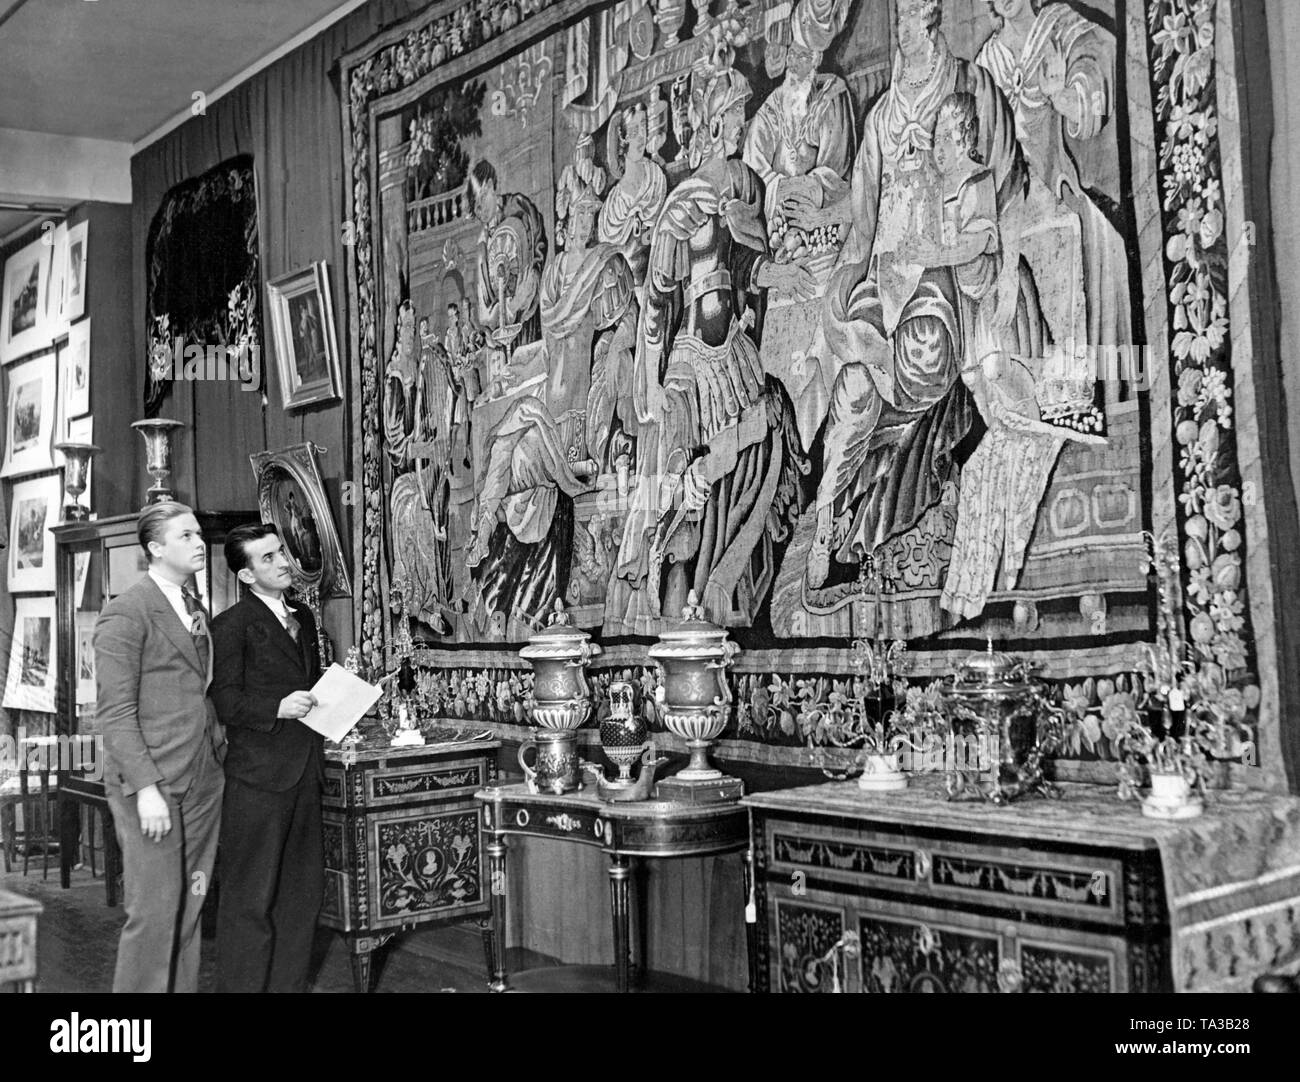 Un tapiz de propiedad de Pedro el Grande se subasta en la Ciudad de Nueva York. El Gobierno soviético tuvo que vender tesoros artísticos de la época zarista repetidamente para obtener divisas extranjeras. Foto de stock